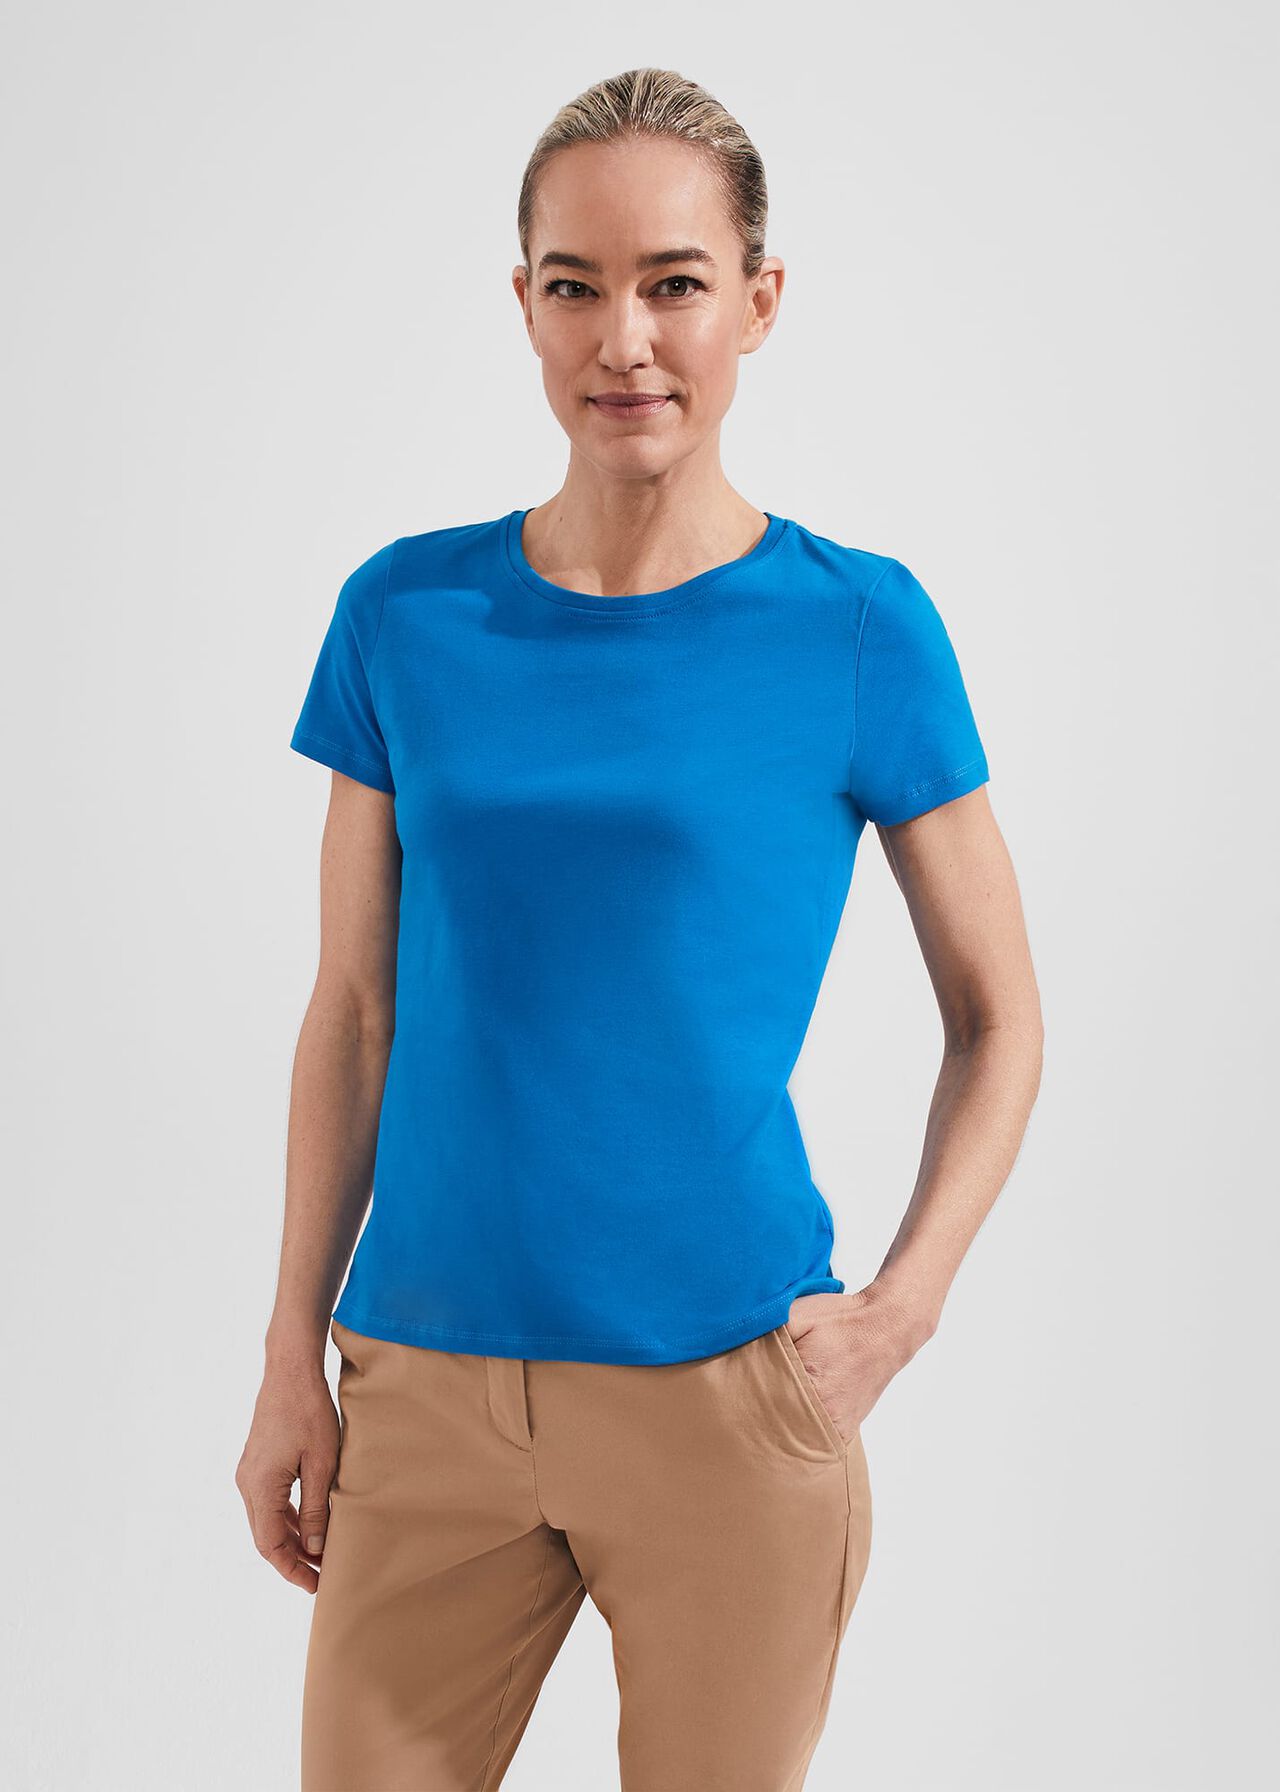 Pixie Cotton T-Shirt, Imperial Blue, hi-res